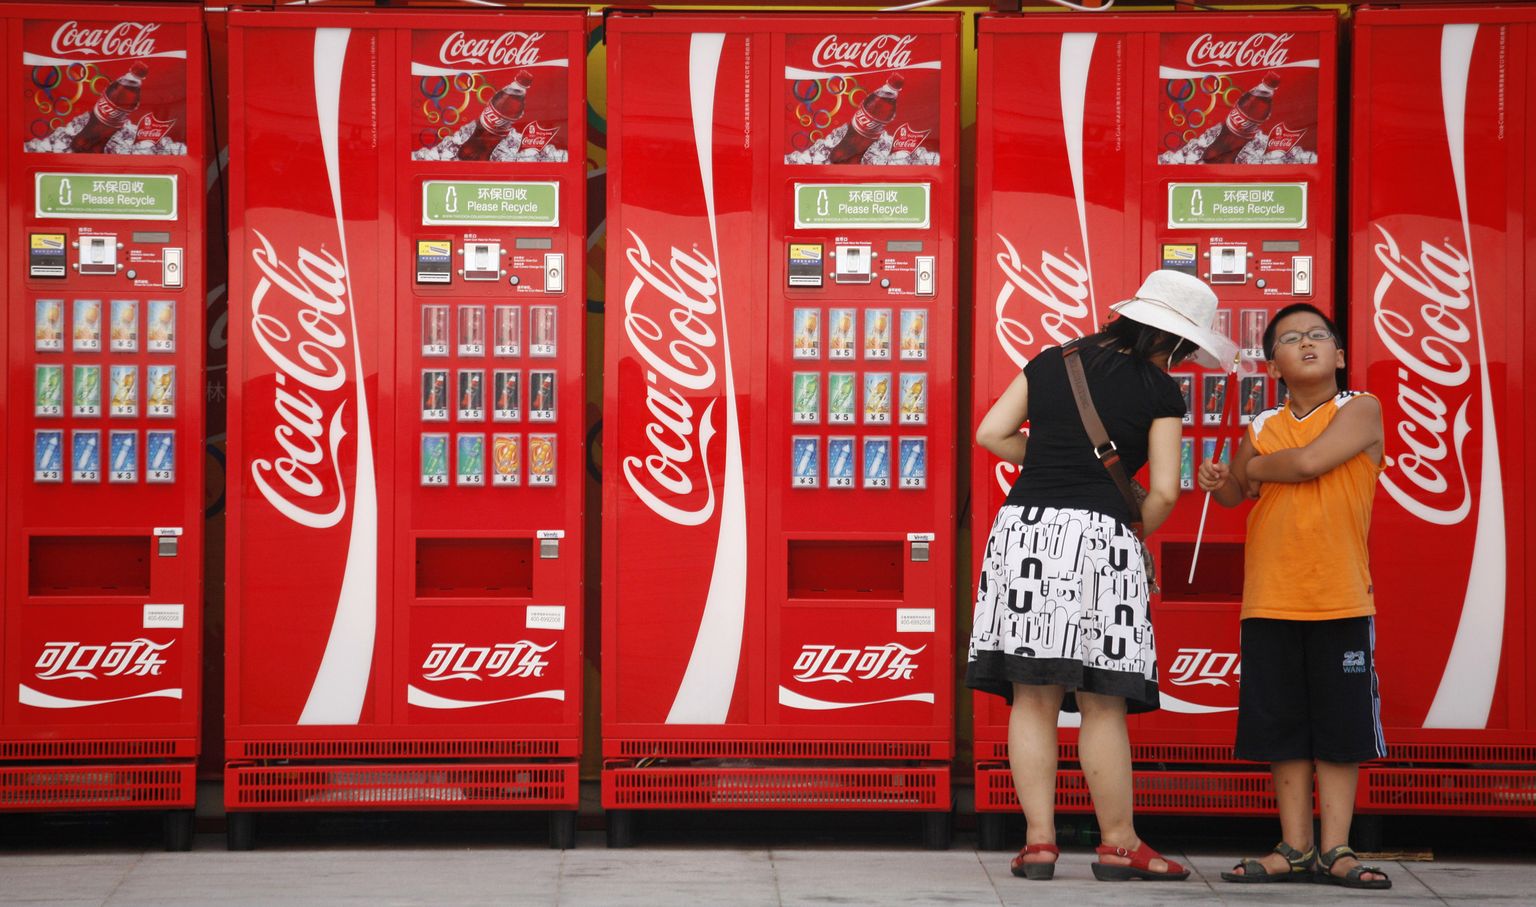 Joogitootja Coca-Cola teeb sotsiaalmeediast pausi.